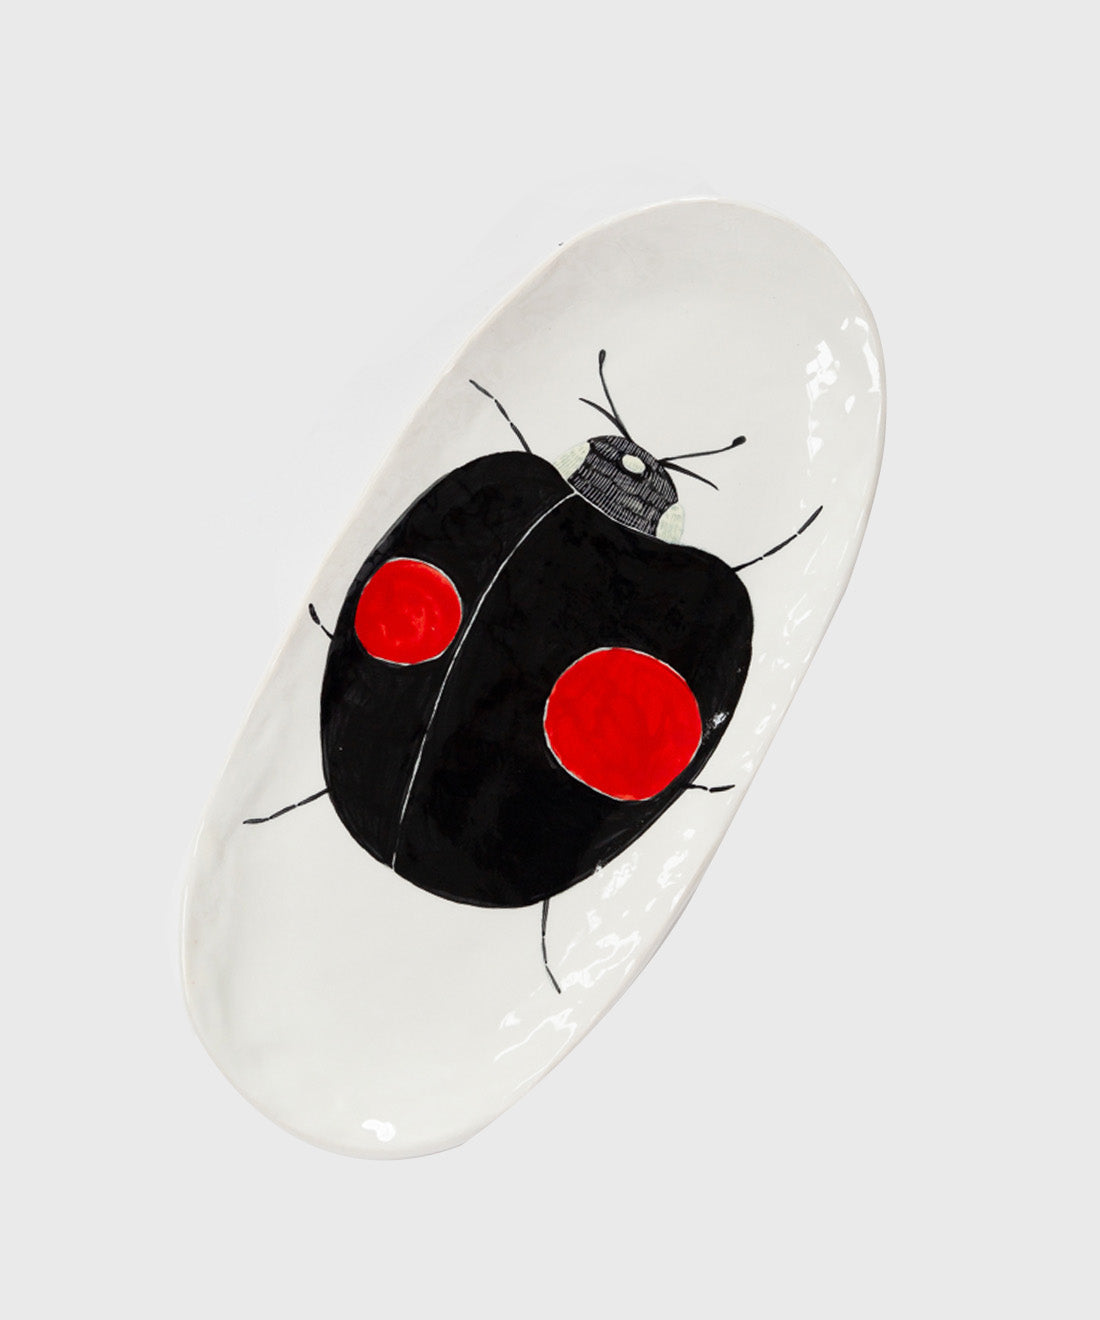 Ladybird Platter, 2